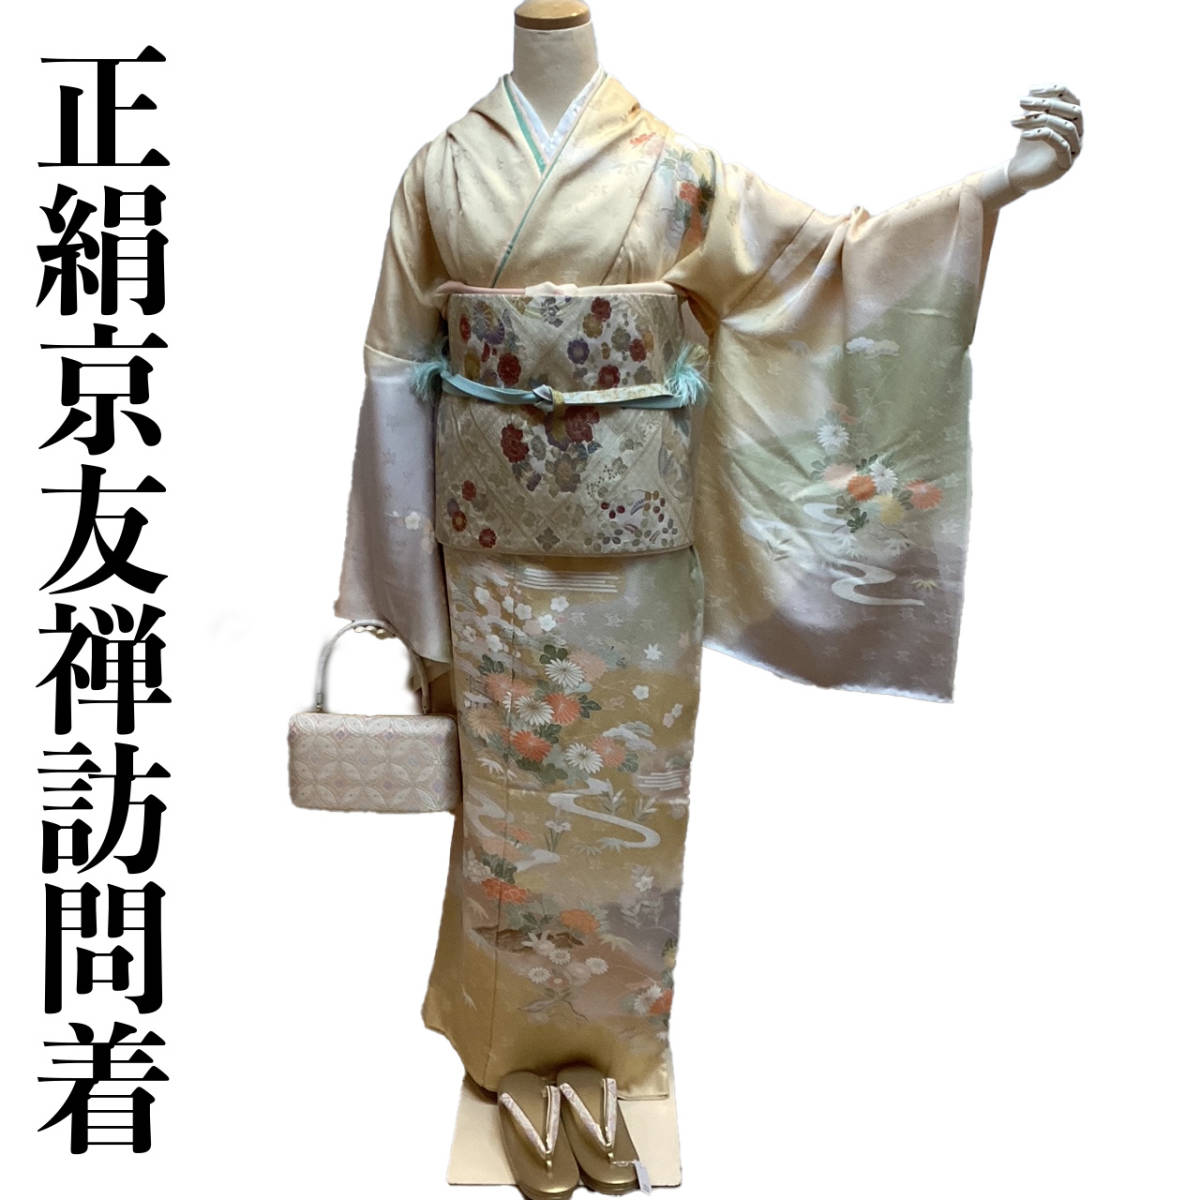 Homongi, maßgeschneidert HO227T, pure Seide, handbemaltes Kyoto Yuzen, klassisches Vier-Jahreszeiten-Blumenmuster, sorgfältig hergestellt von Shusei Shiraki, neu, Versand inklusive, Damen-Kimono, Kimono, Besuchskleid, ungeschnitten